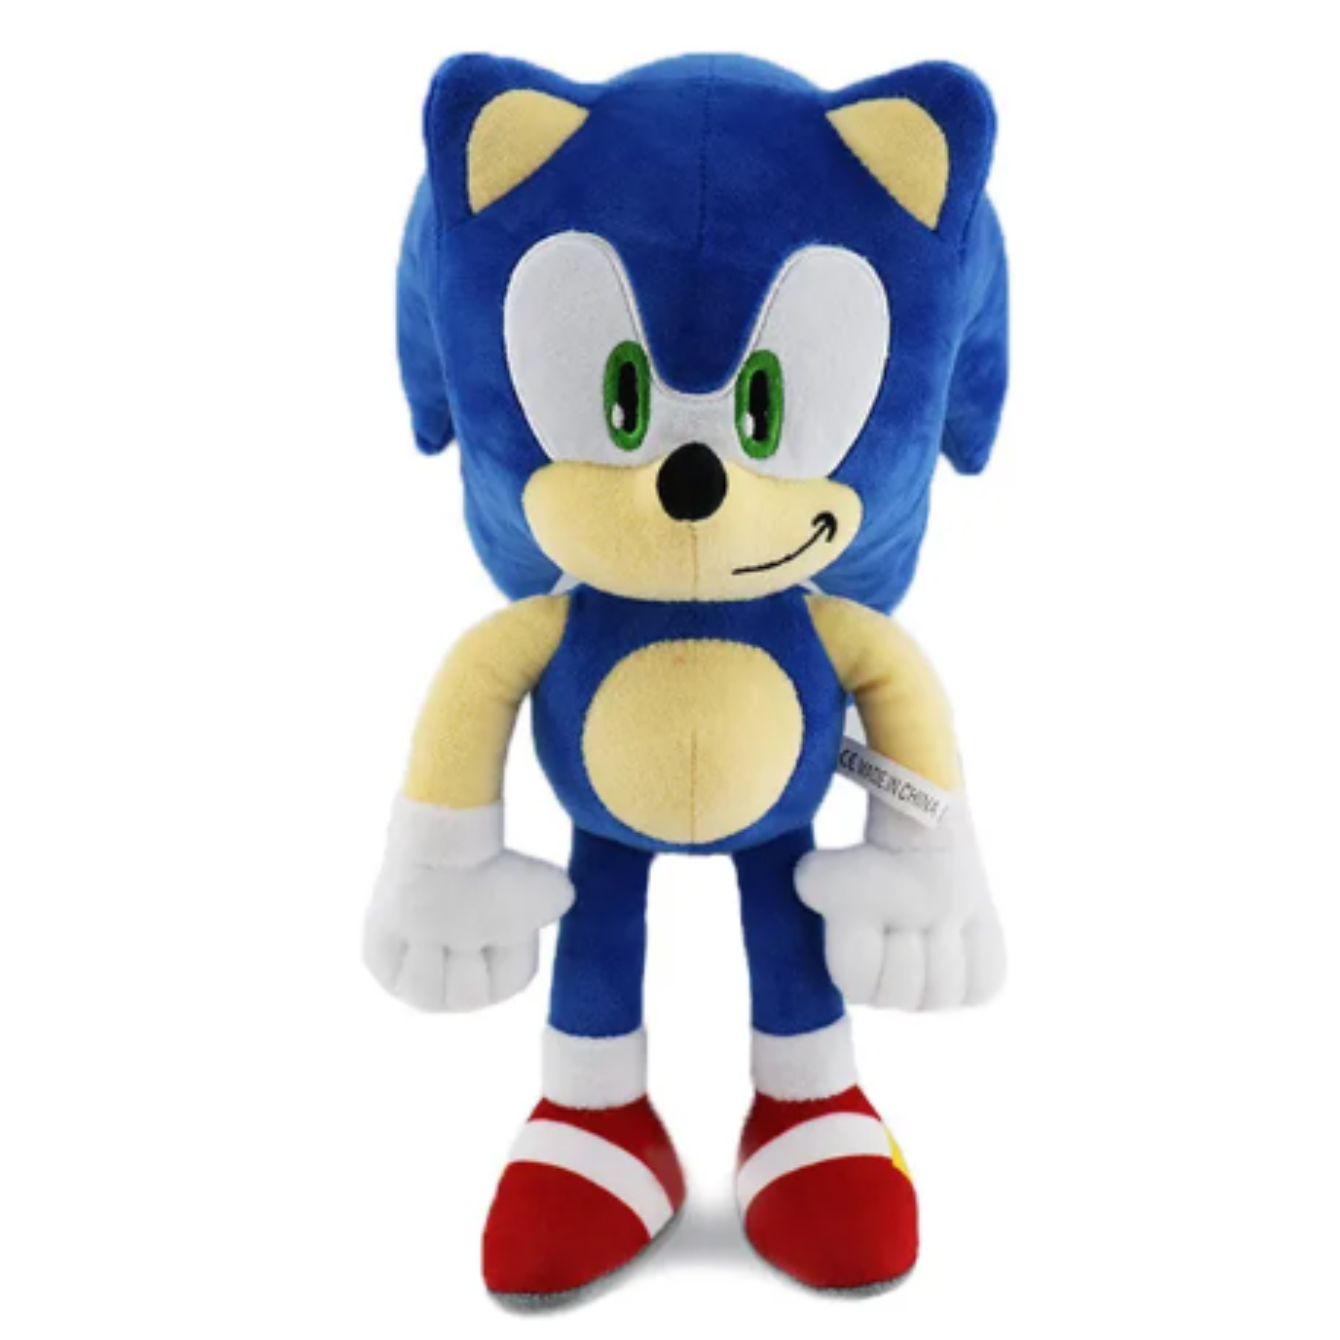 Sonic the Hedgehog plush